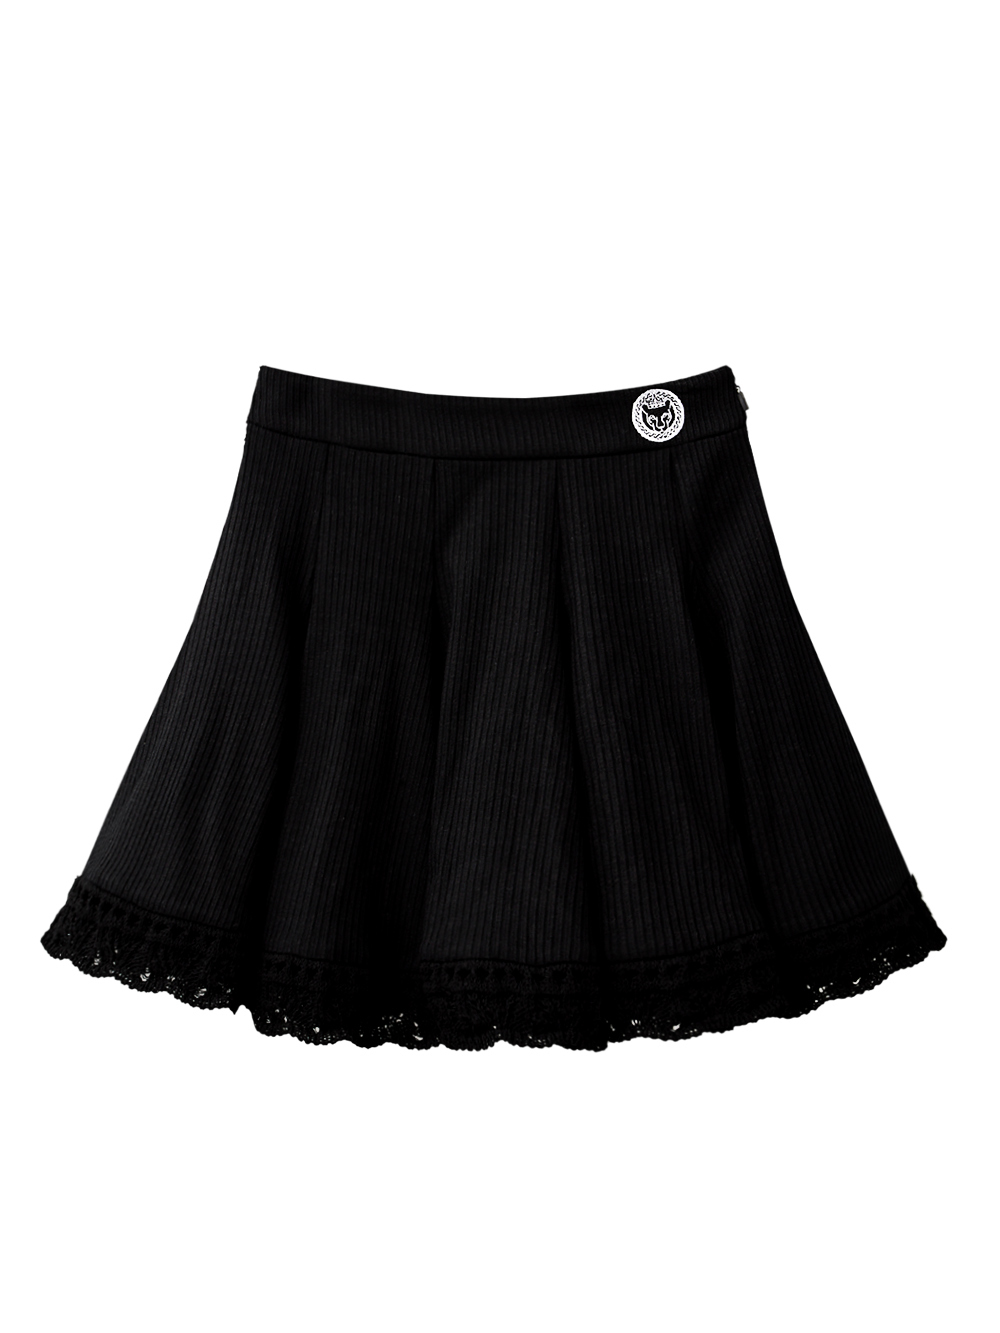 UTAA Lattice Lace Flare Skirt : Black (UD2SKF416BK)